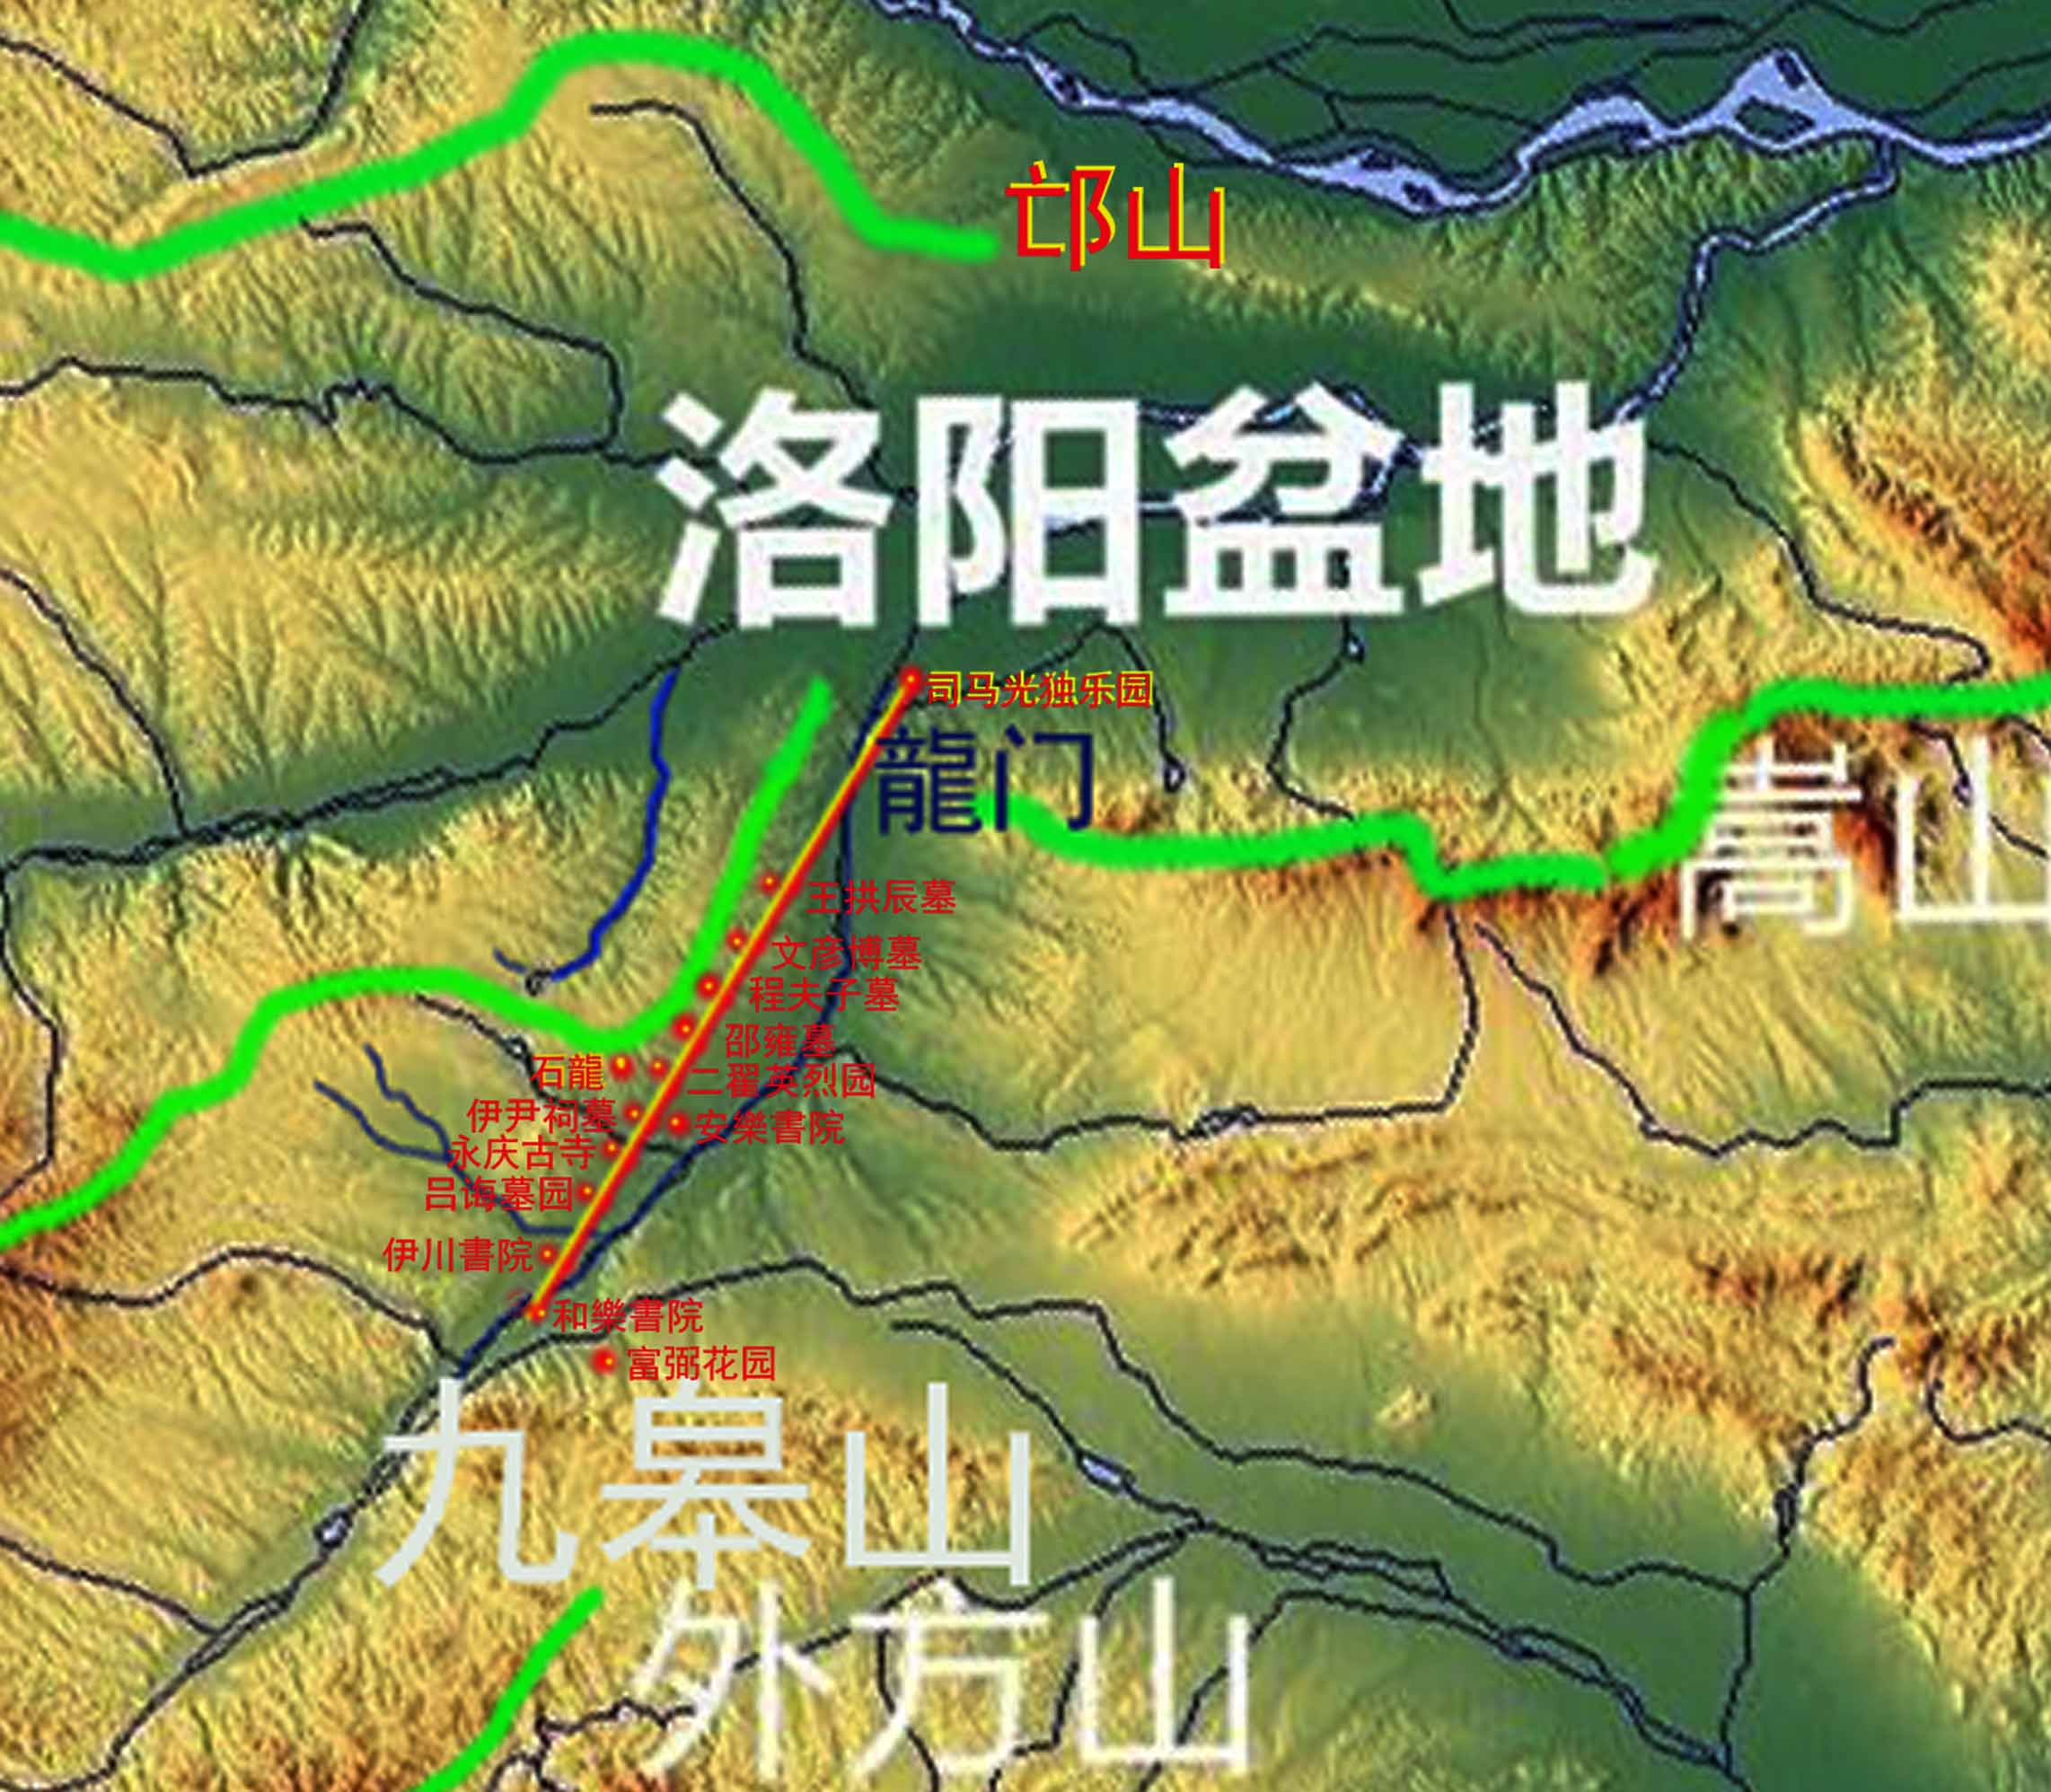 洛阳龍脉与邵雍选定的风水宝地位置图.jpg